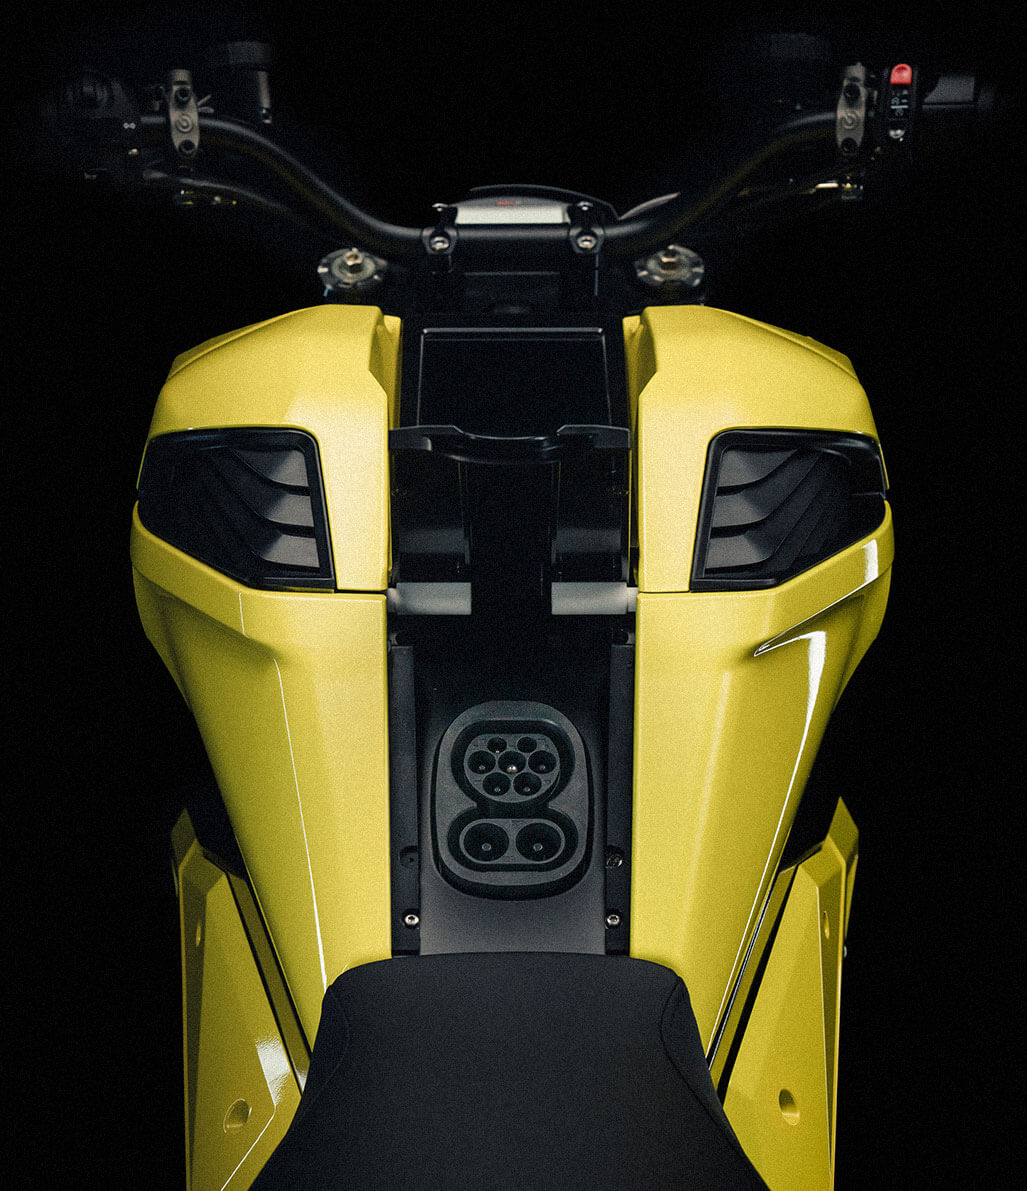 वर्ज टीएस इलेक्ट्रिक मोटरसाइकिल उत्पादन में प्रवेश करती है